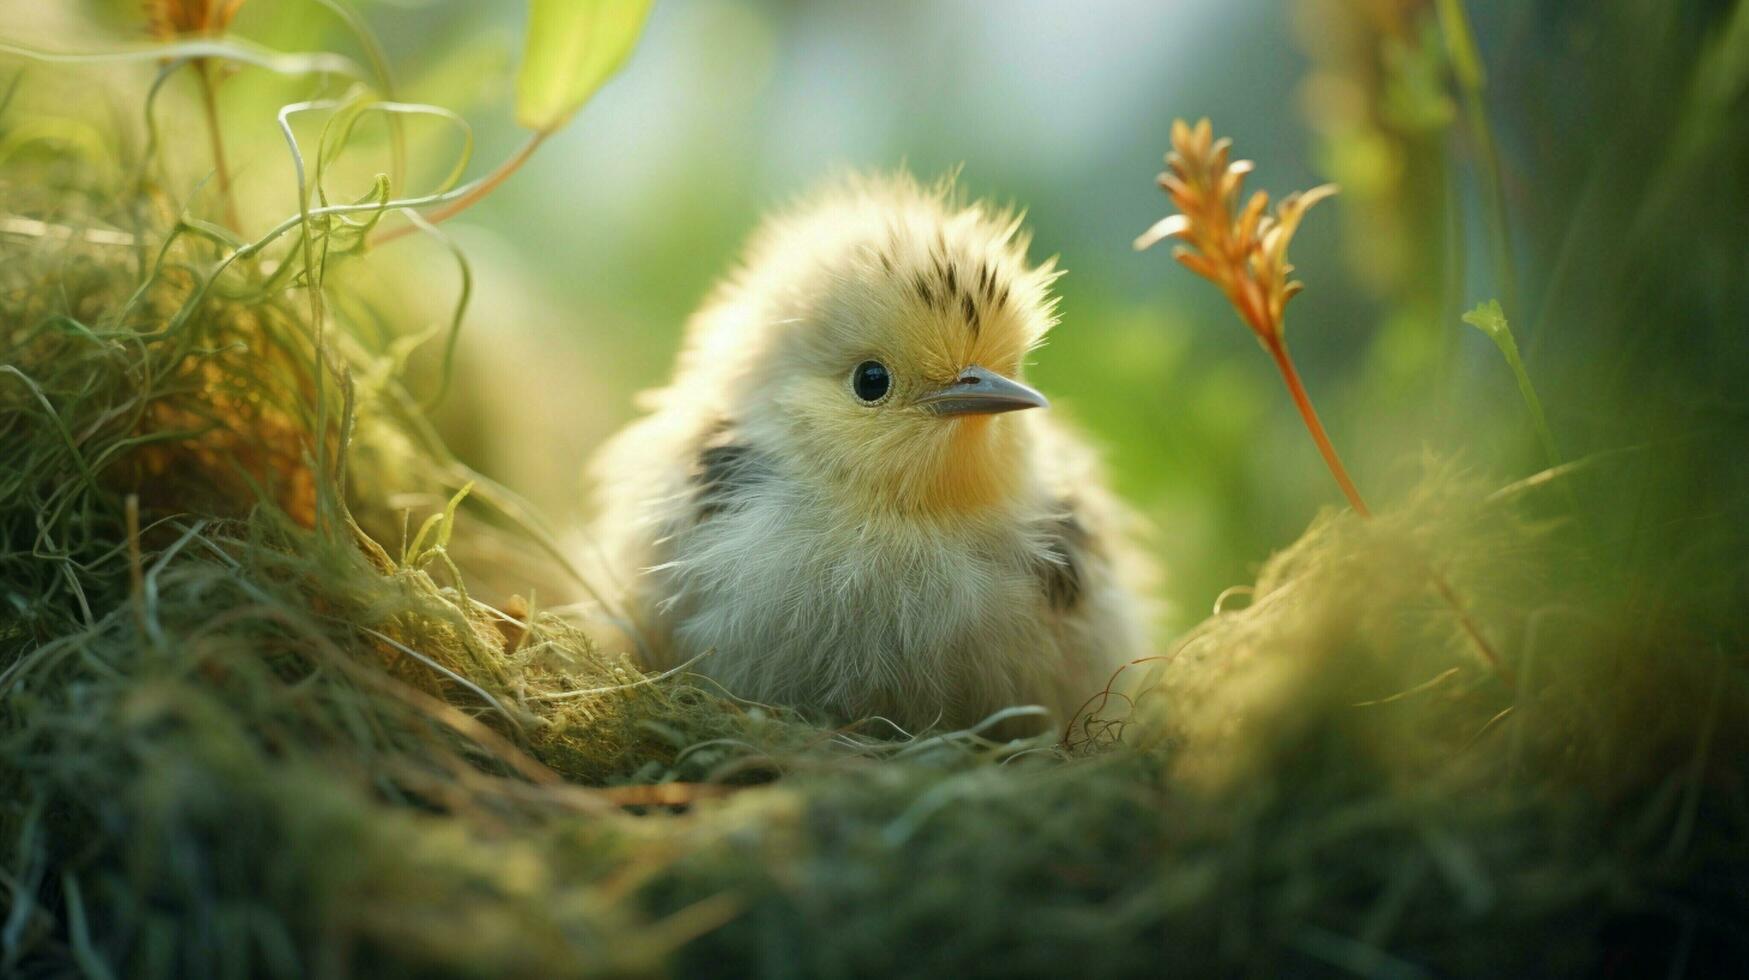 schattig baby vogel met pluizig veren in een met gras begroeid foto